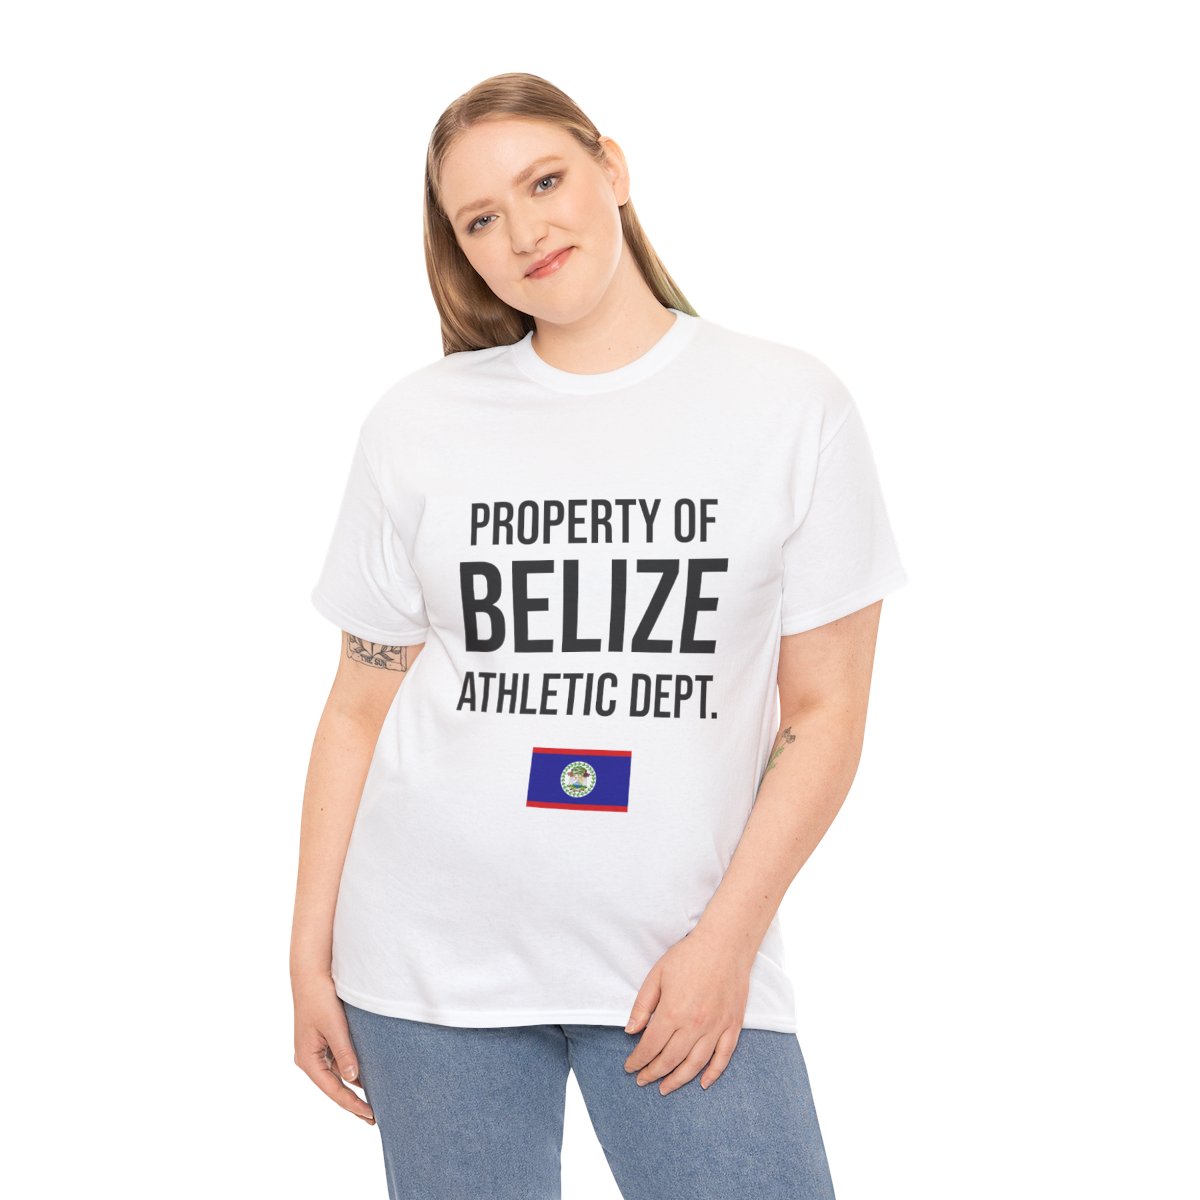 Belize Athletic Dept. Unisex Tshirt product thumbnail image